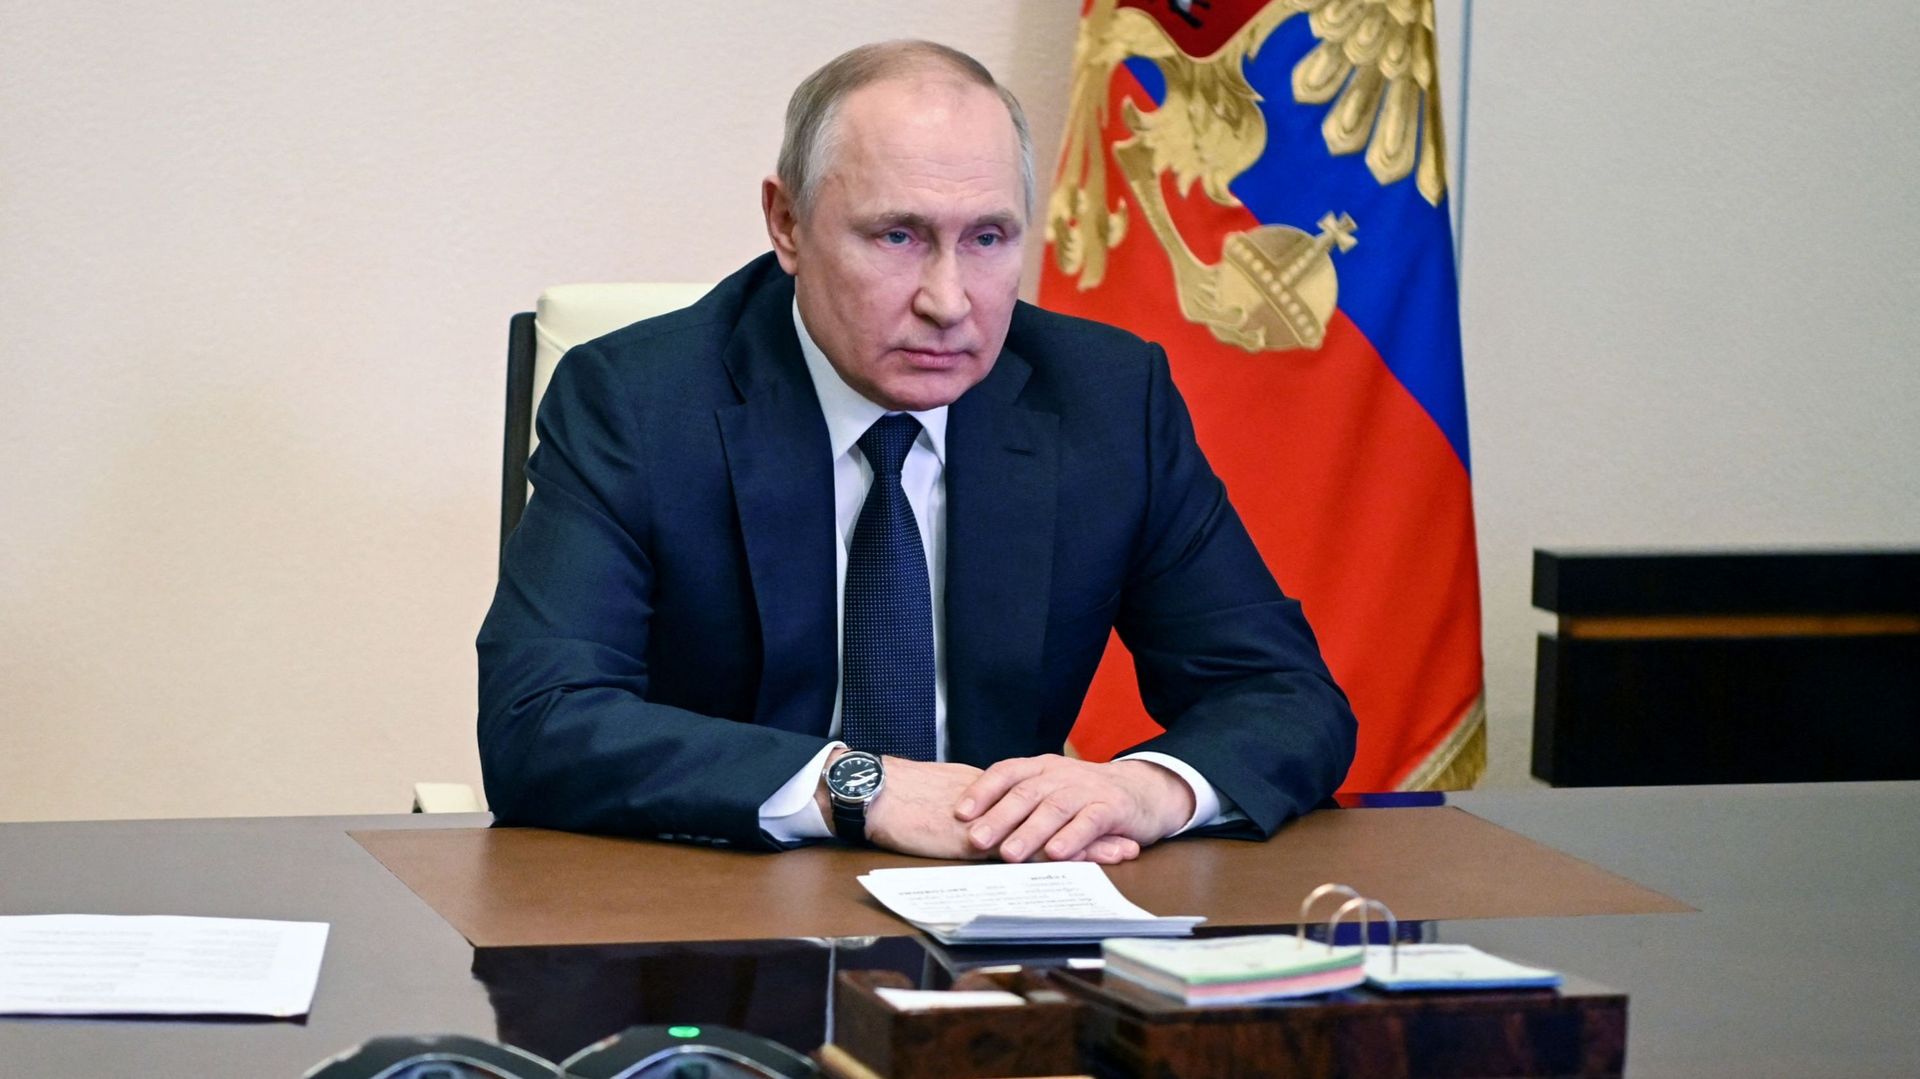 Vladimir Poutine malade ? Subit-il les effets secondaires d’un traitement à base de stéroïdes ?